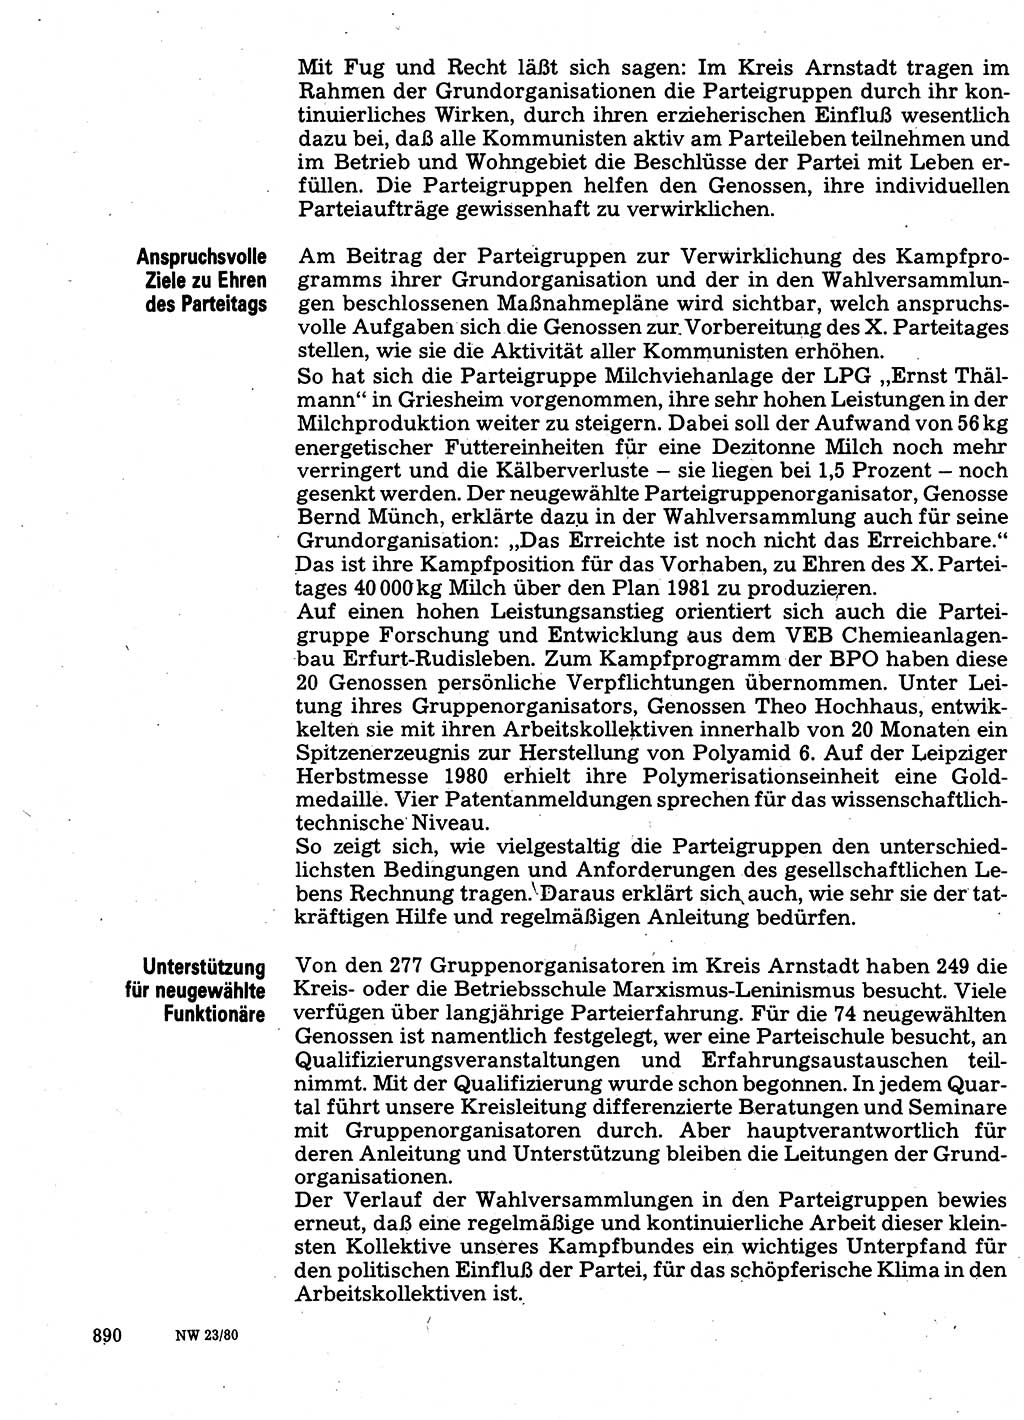 Neuer Weg (NW), Organ des Zentralkomitees (ZK) der SED (Sozialistische Einheitspartei Deutschlands) für Fragen des Parteilebens, 35. Jahrgang [Deutsche Demokratische Republik (DDR)] 1980, Seite 890 (NW ZK SED DDR 1980, S. 890)